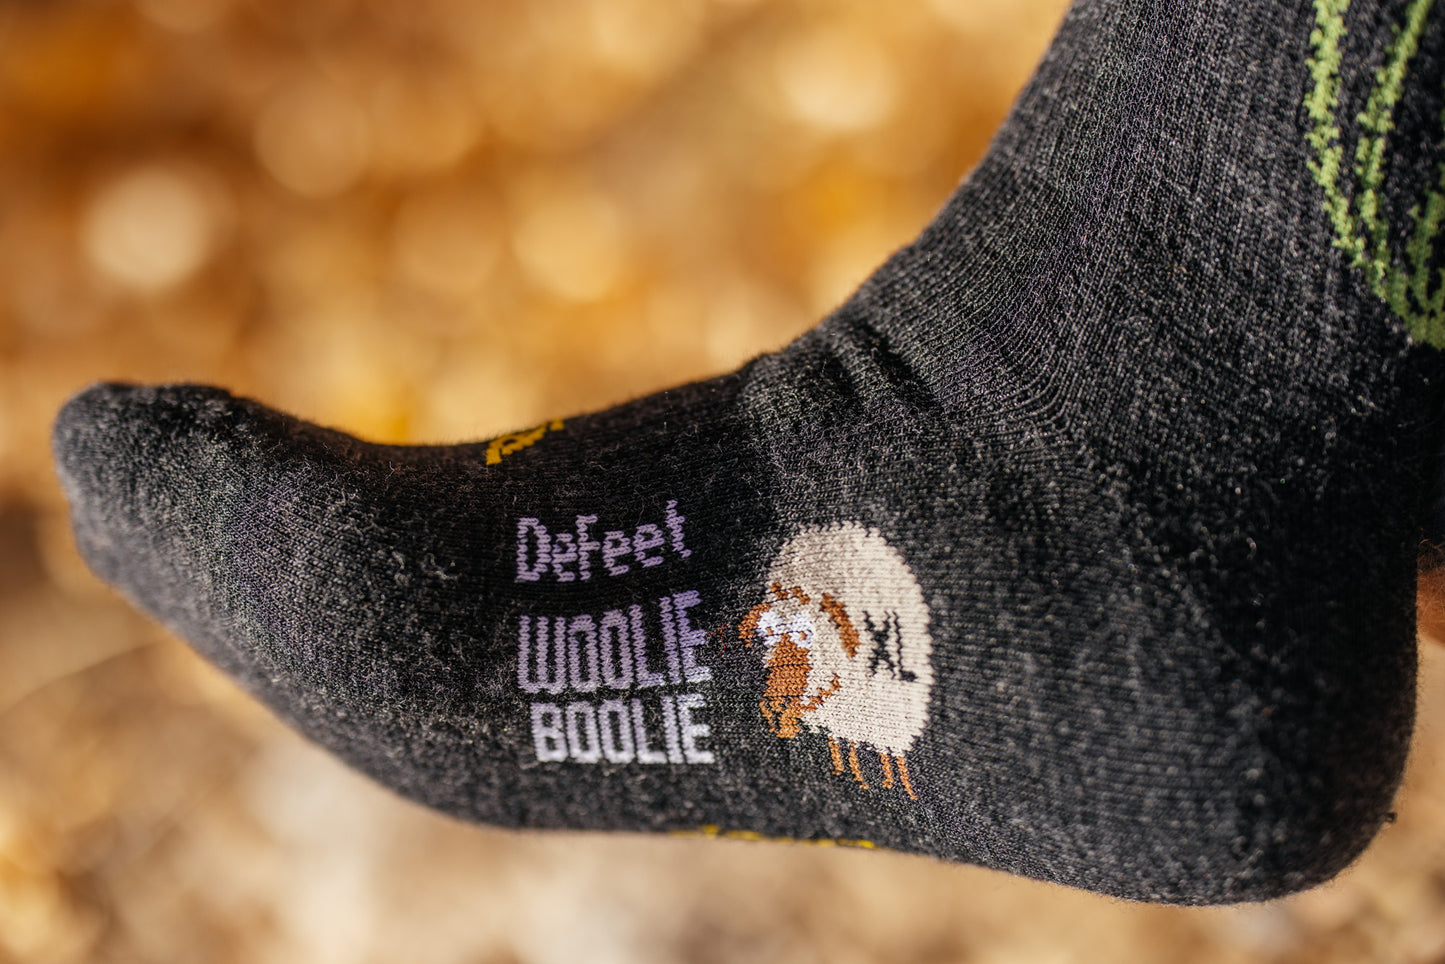 Socks - Cactavist Woolie Boolie